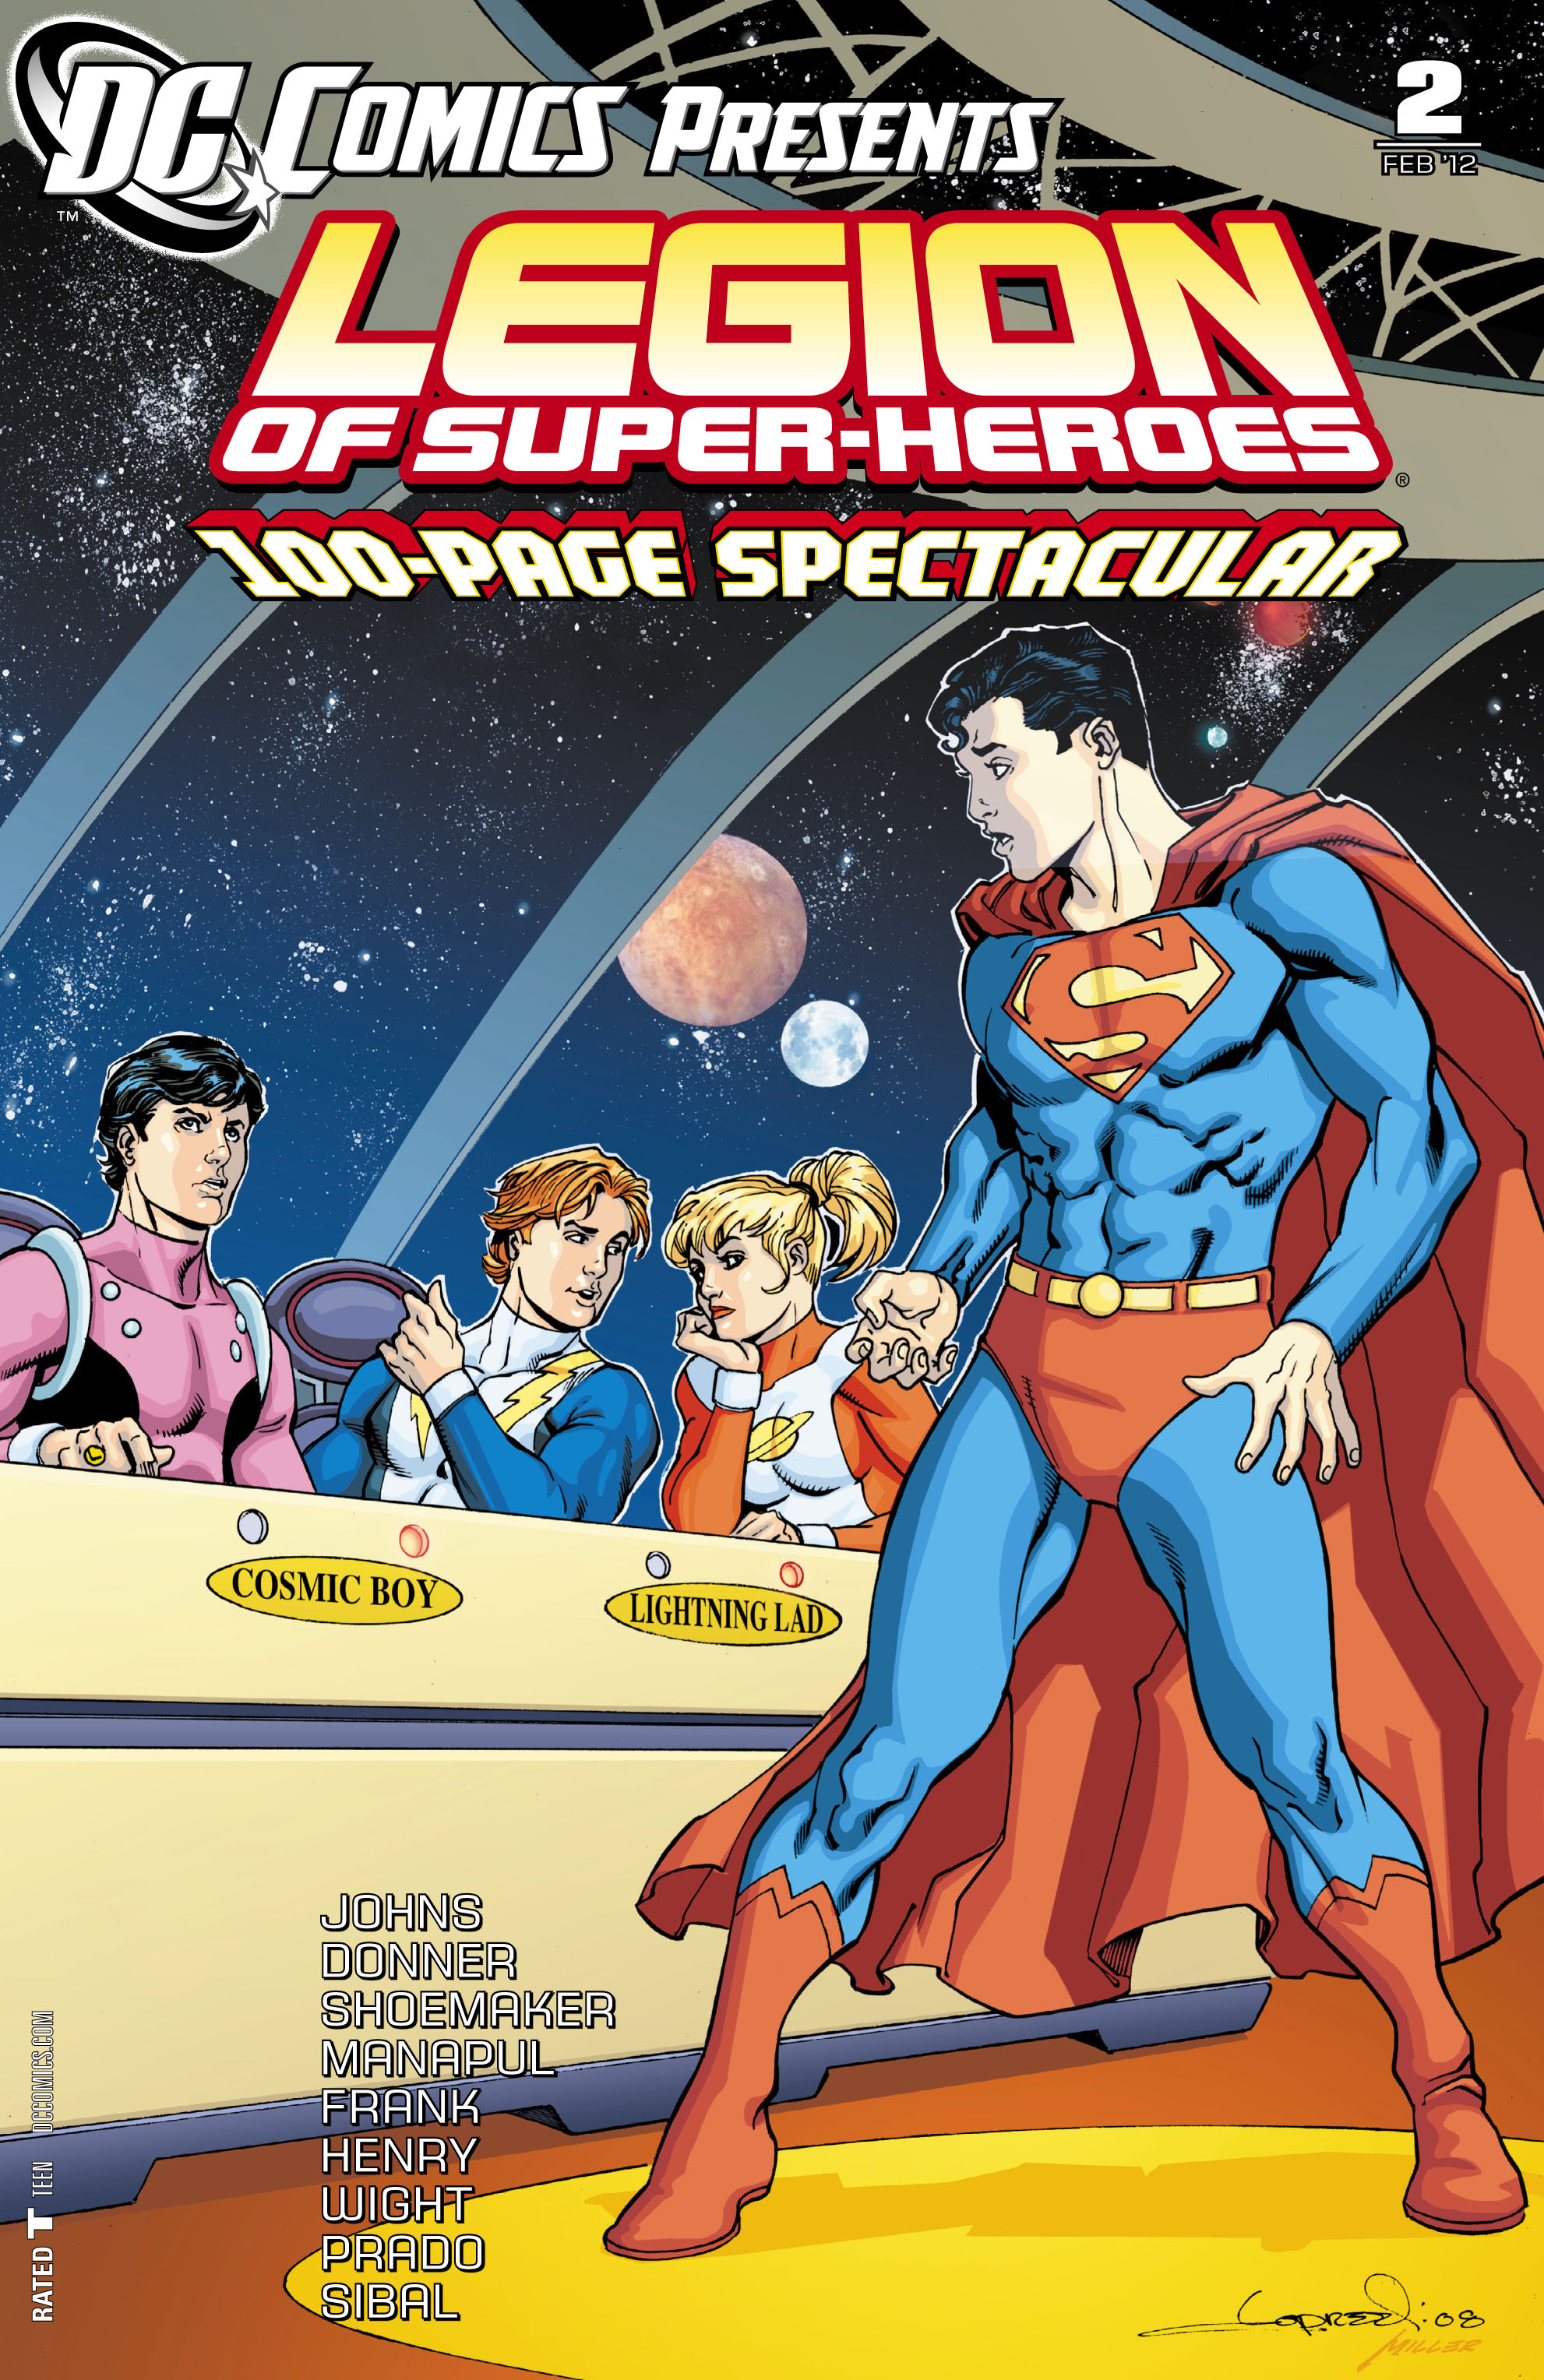 Read online DC Comics Presents: Legion of Super-Heroes comic -  Issue #2 - 1